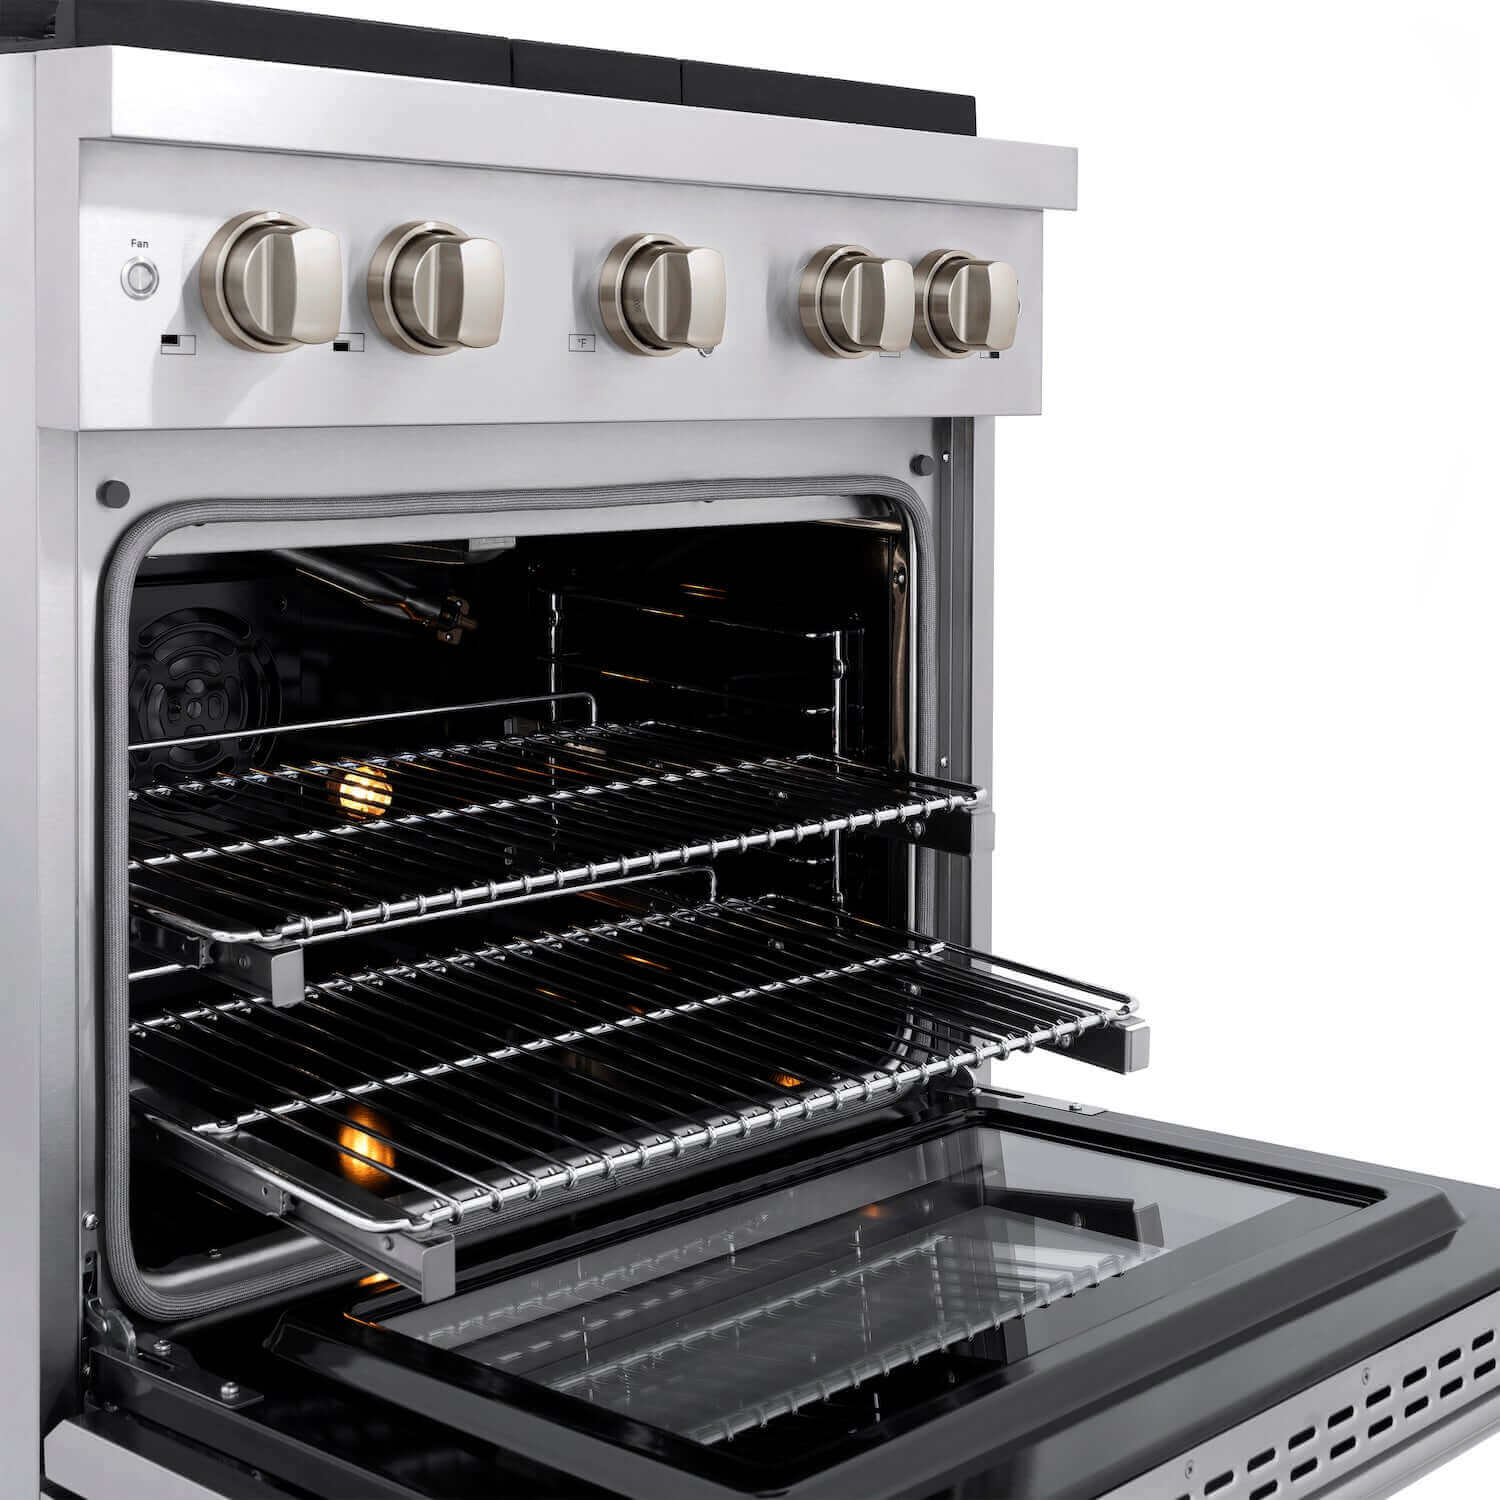 ZLINE 30" Stainless Steel Gas Range with oven door open and dual halogen oven lights activated.